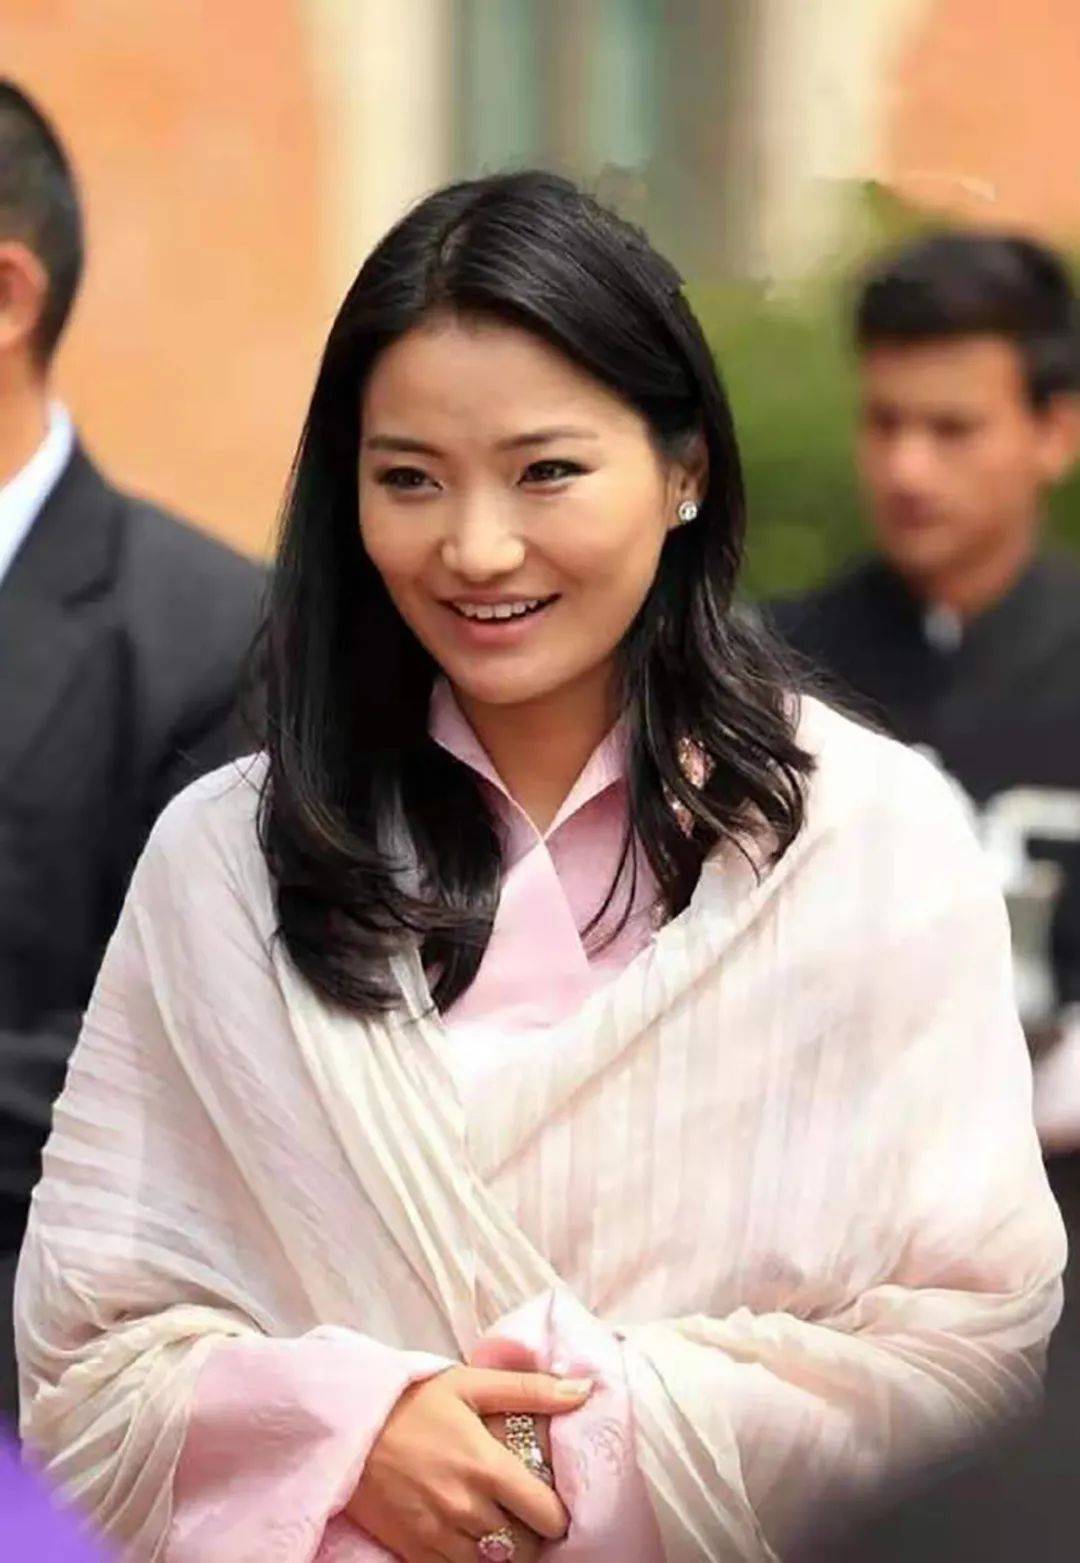 30岁不丹王后夏日清凉穿夹脚凉鞋配长裙涂上大红指甲油美呆了